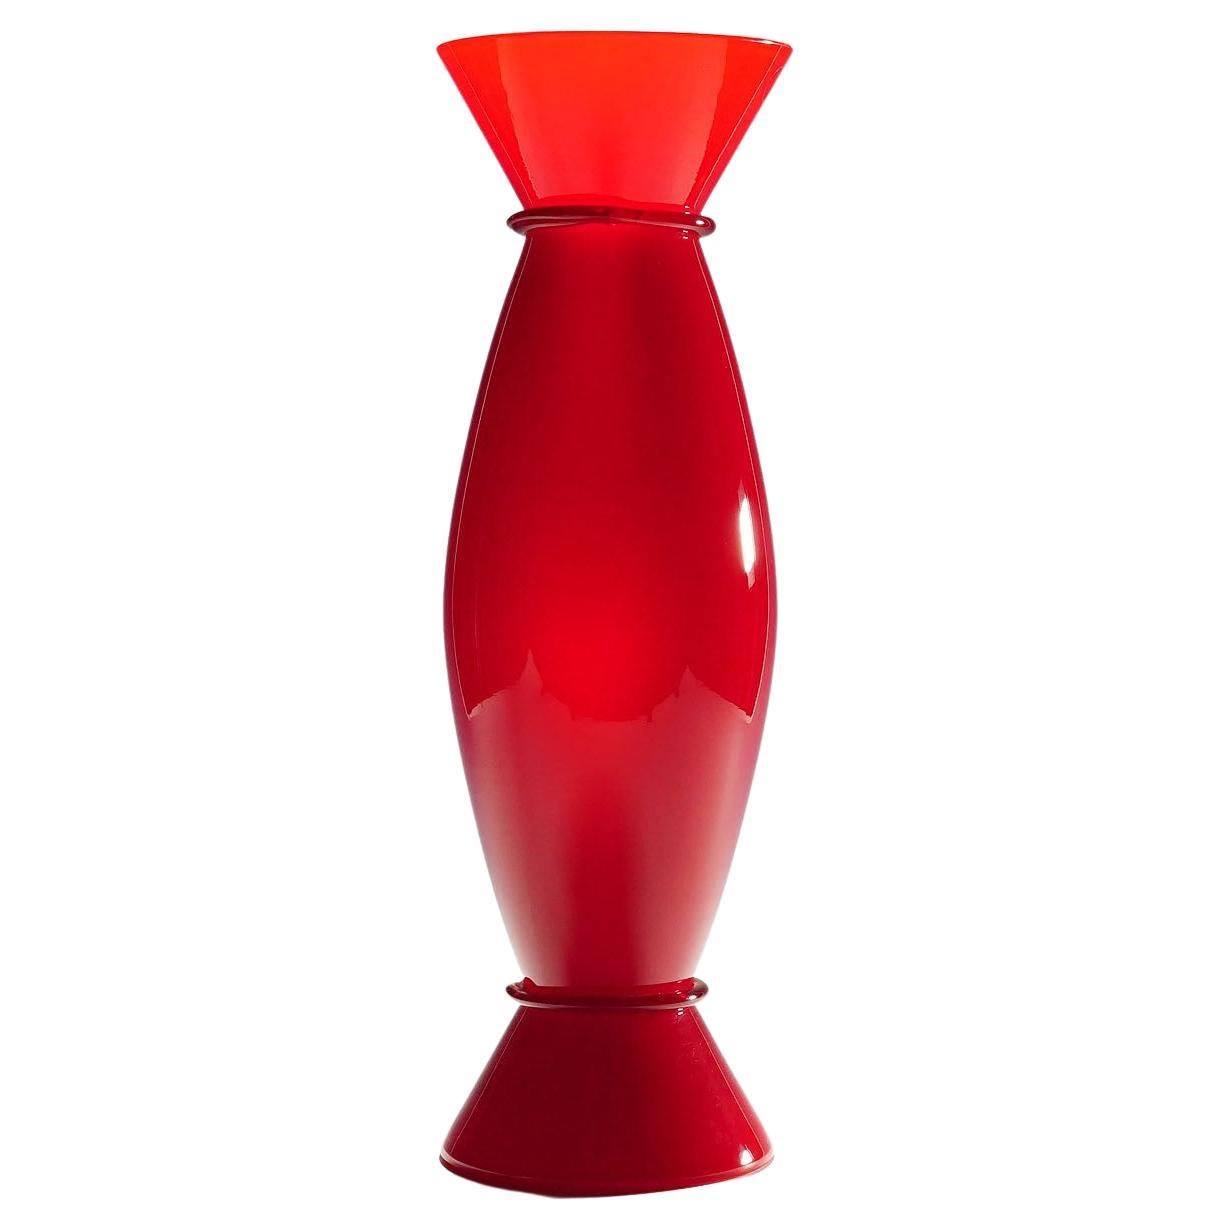 Vase Vintage Acco d'Alessandro Mendini pour Venini, Murano 1997